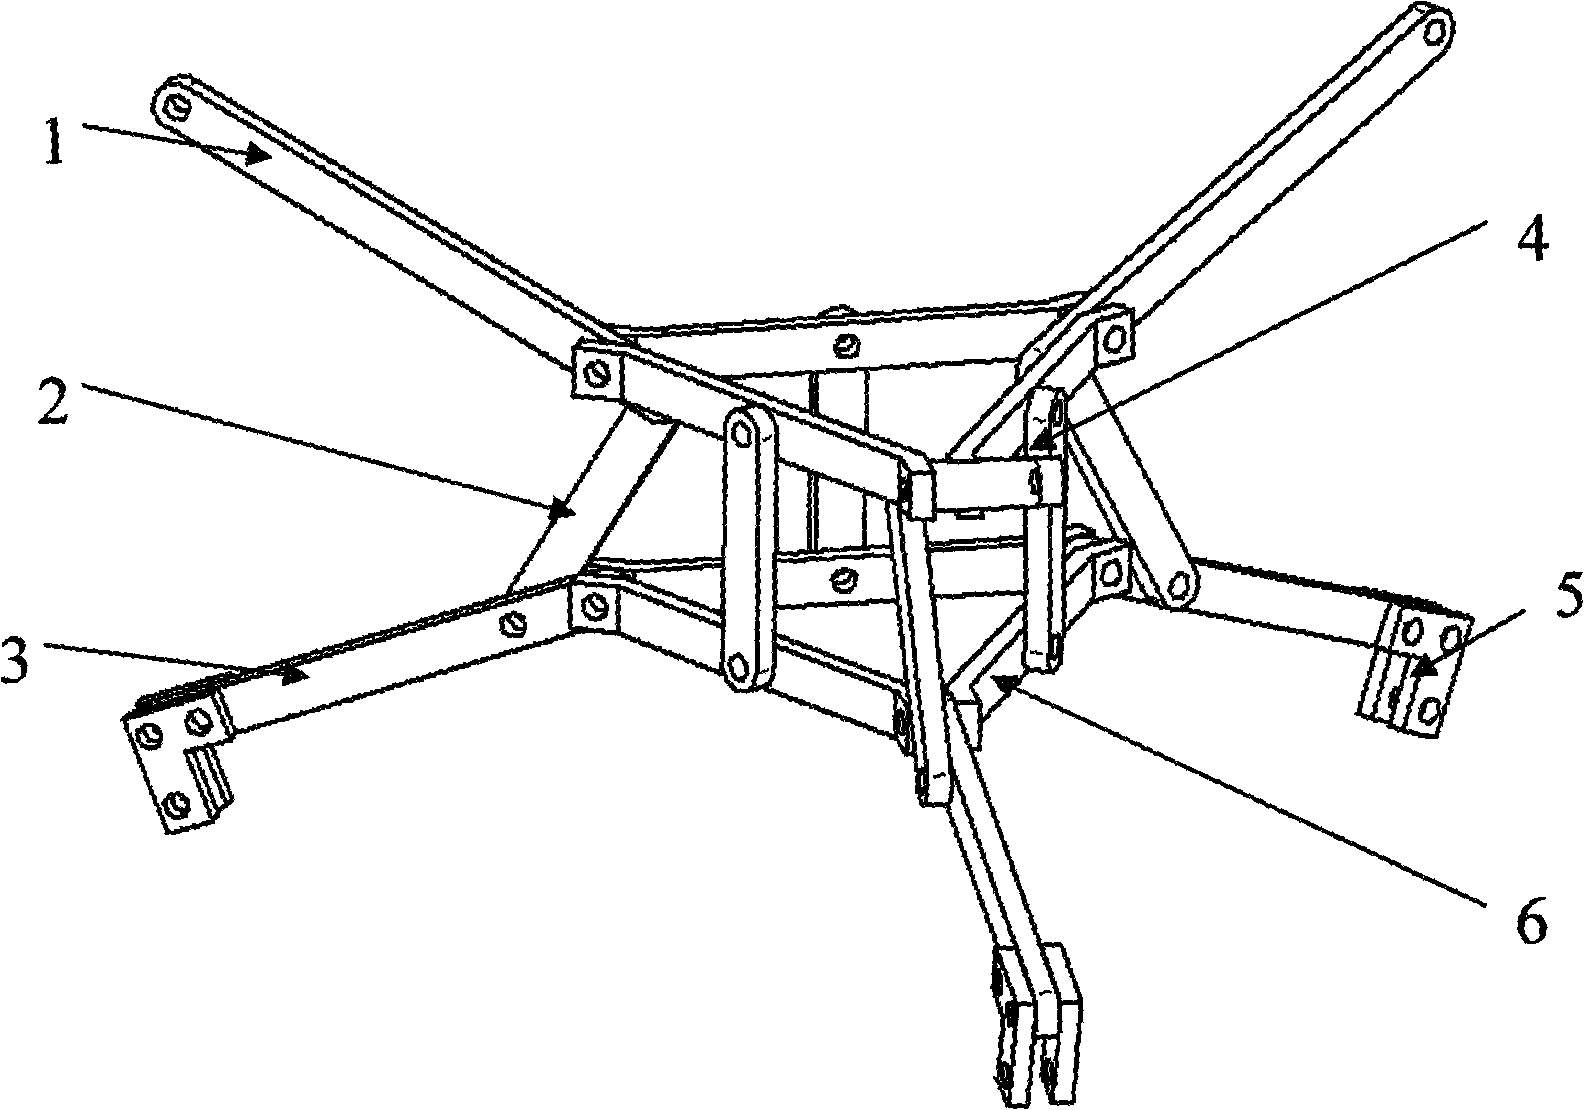 Spacing telescoping mechanism using inverse parallelogram